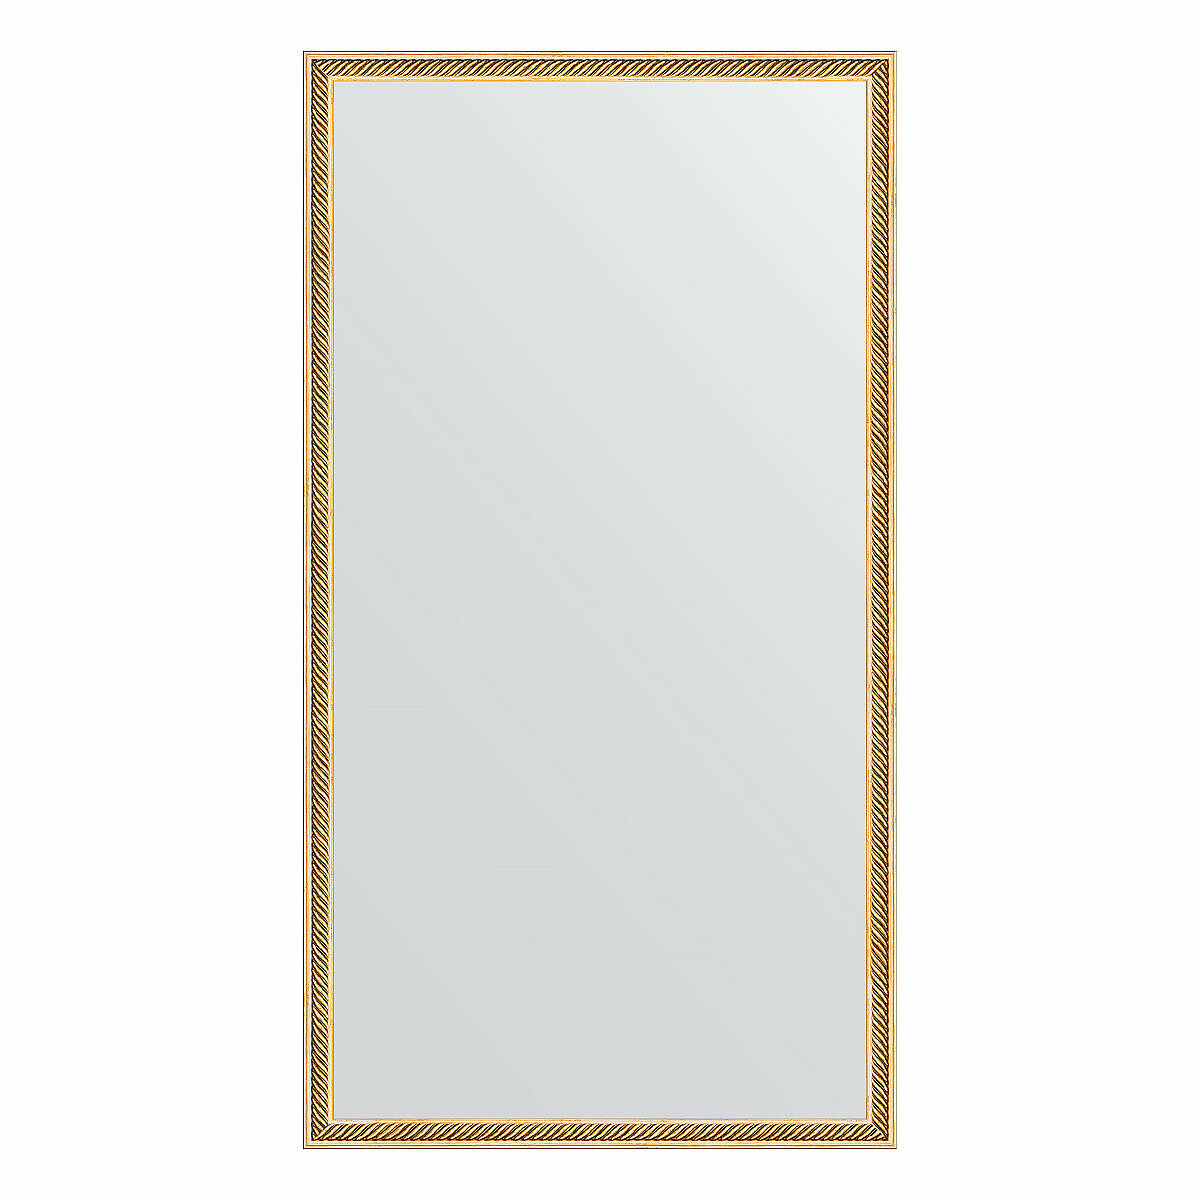 Зеркало настенное EVOFORM в багетной раме витое золото, 58х108 см, для гостиной, прихожей, кабинета, спальни и ванной комнаты, BY 0726